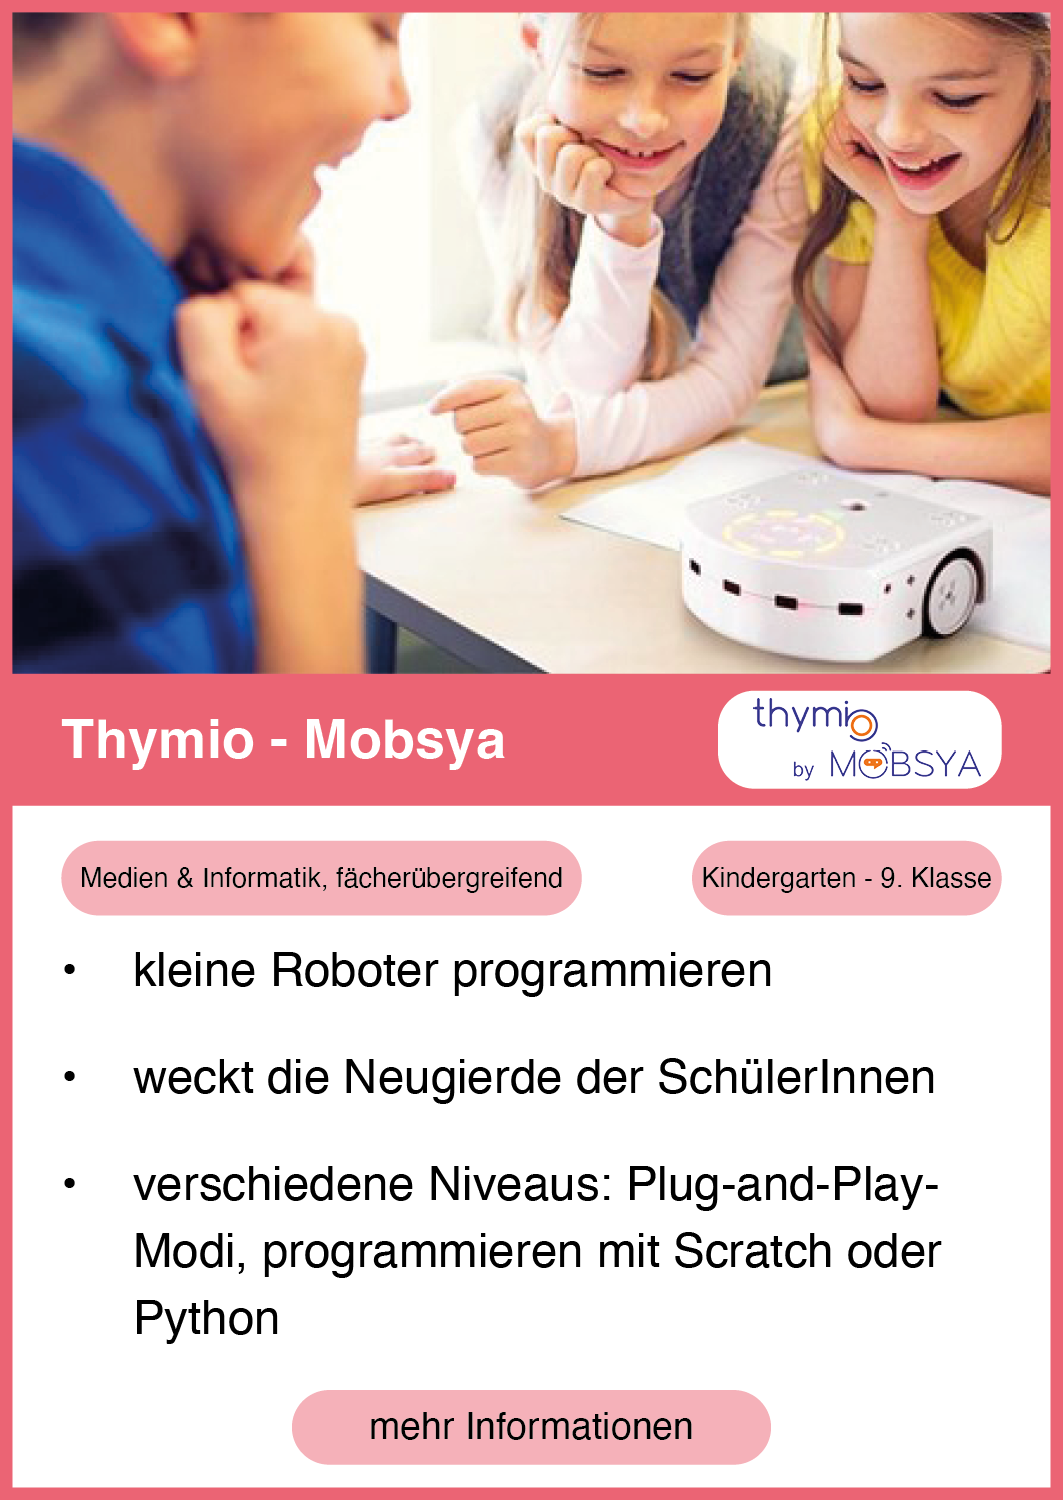 Thymio by Mobsya